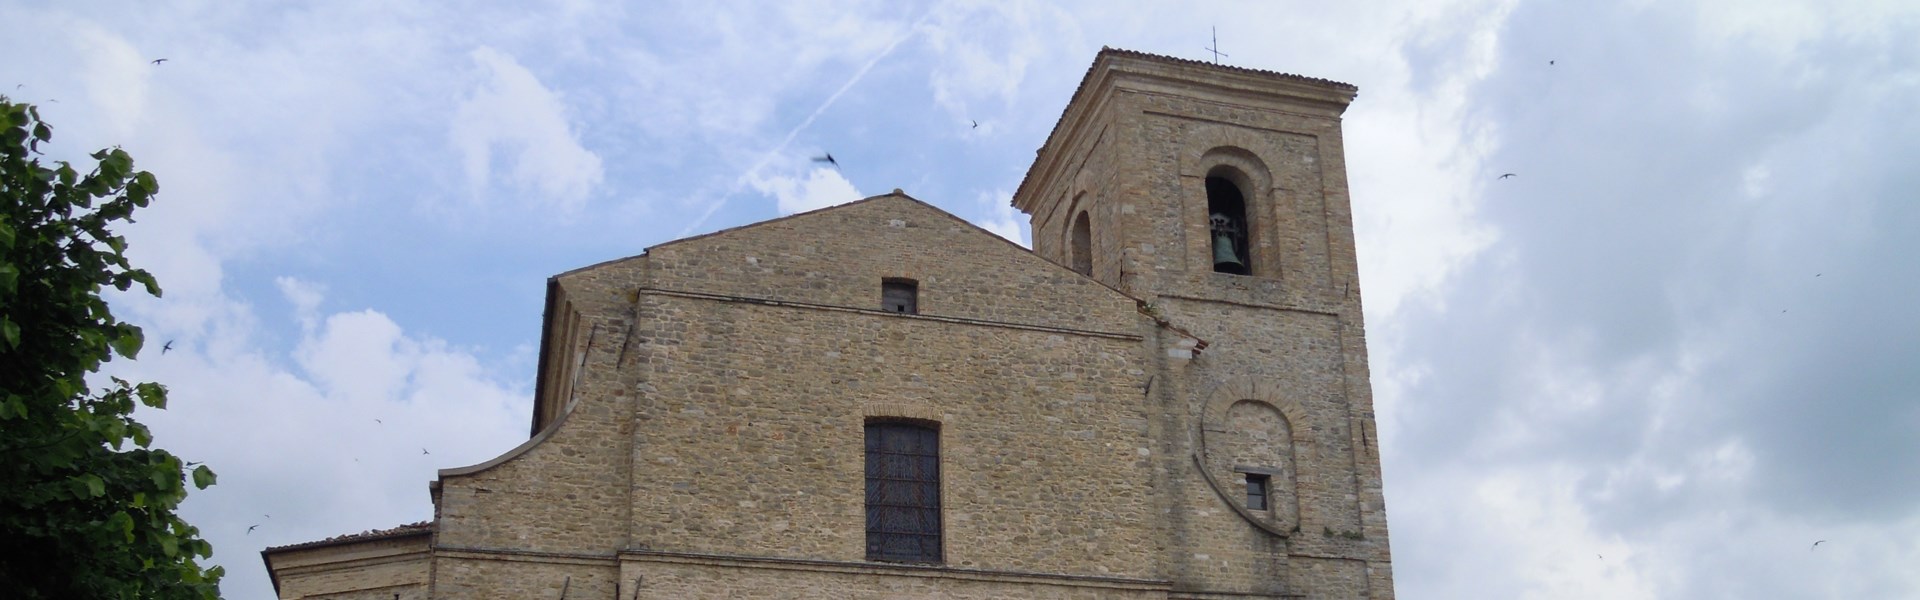 Cingoli - Cattedrale di S. Maria Assunta